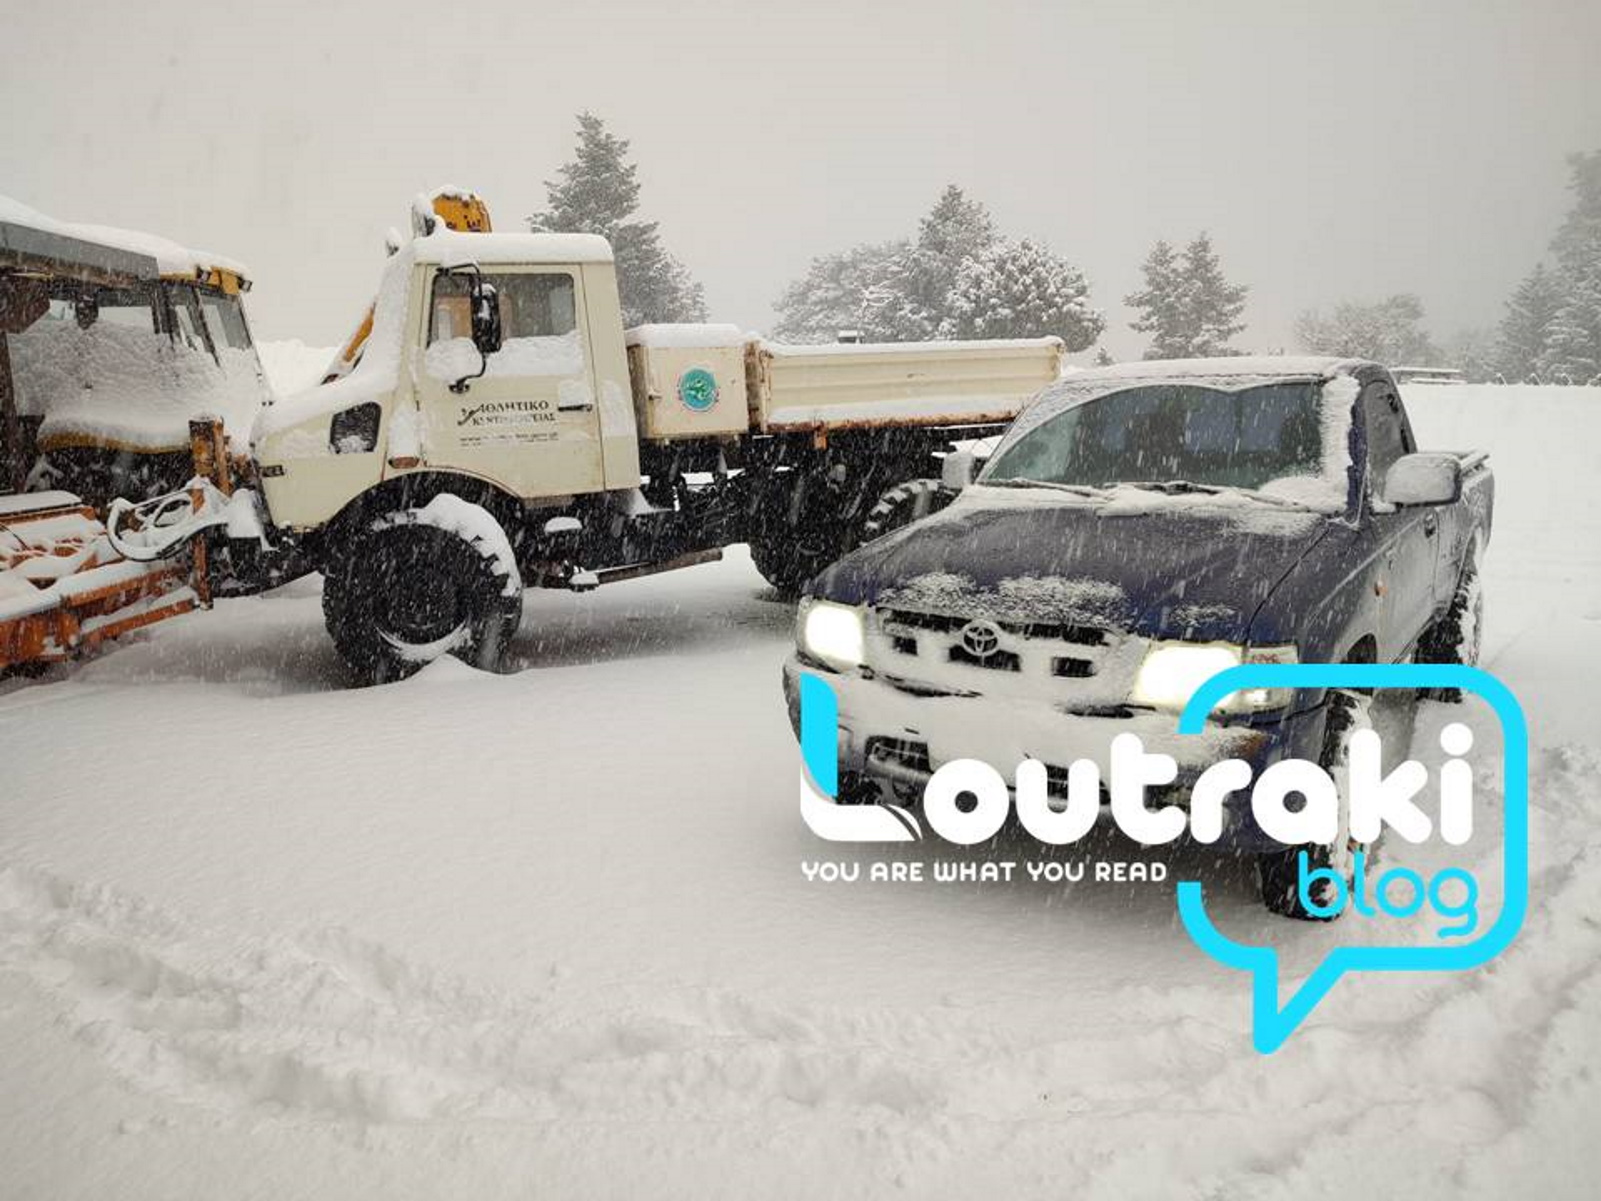 Κακοκαιρία: Πυκνή χιονόπτωση στην Εύβοια και την ορεινή Κορινθία – Εικόνες από τη νέα επέλαση του χιονιά